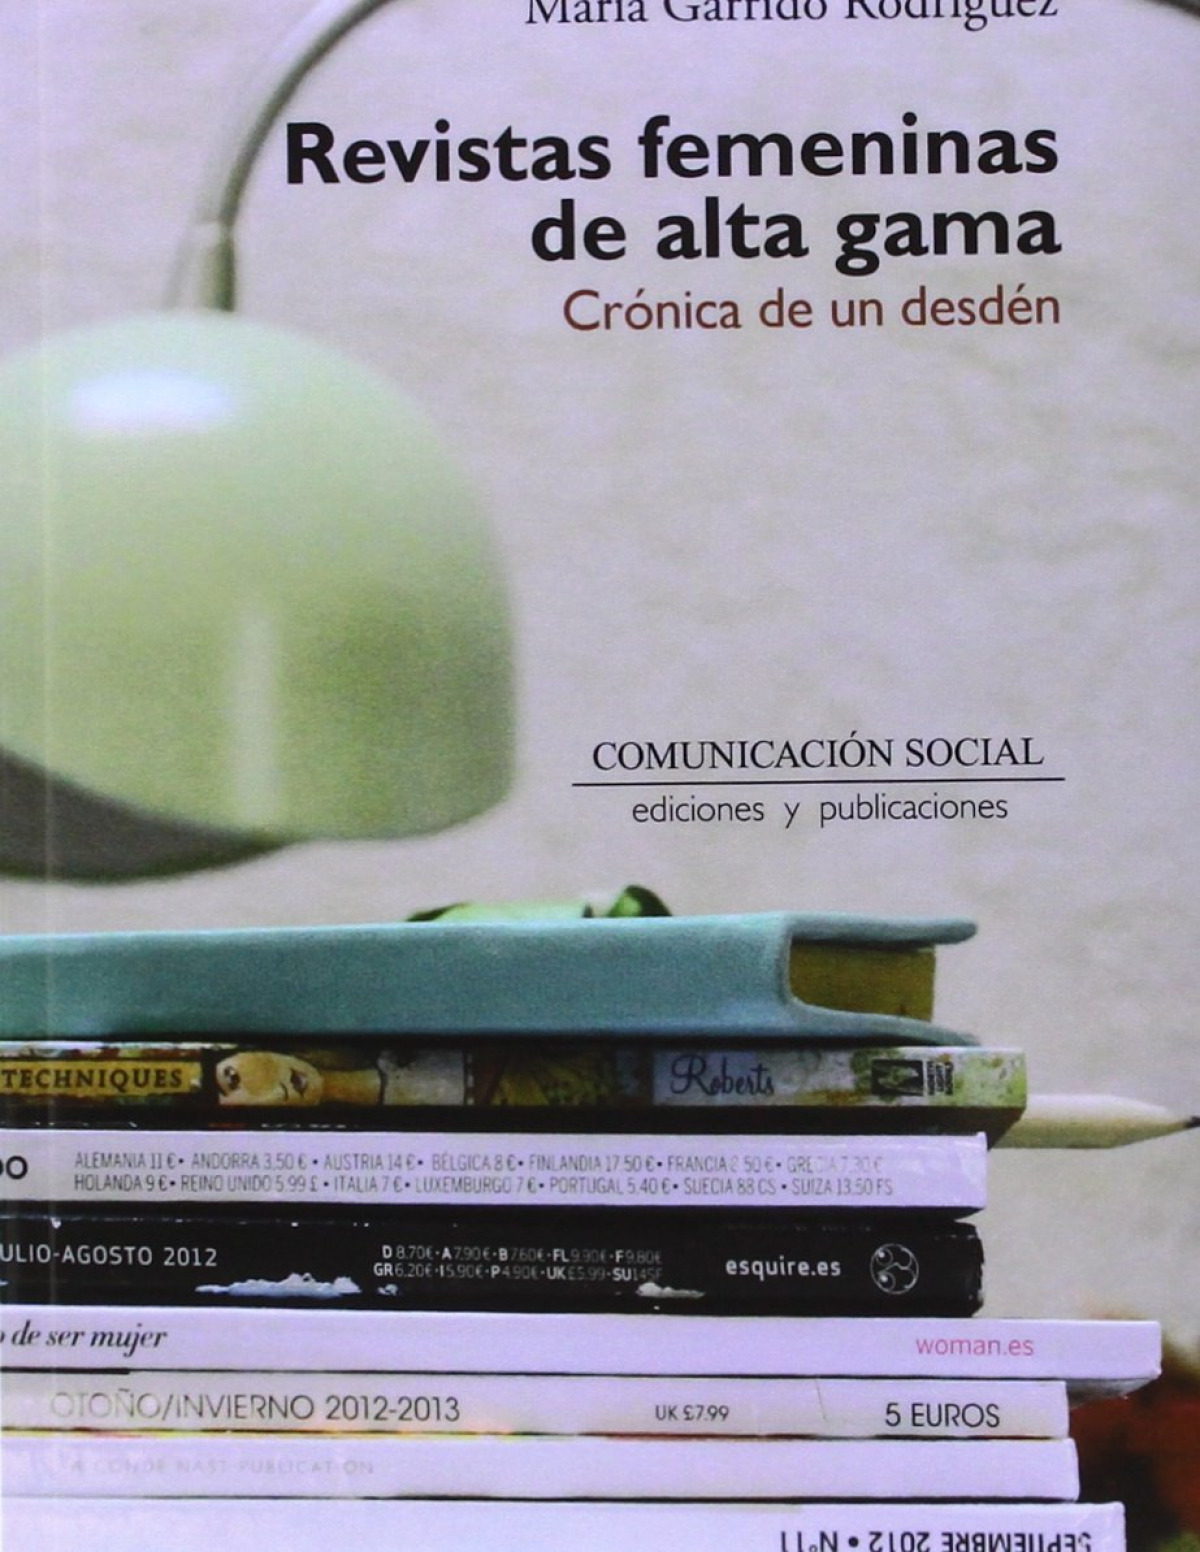 Revistas femeninas de alta gama Crónica de un desdén - Garrido Rodríguez, María